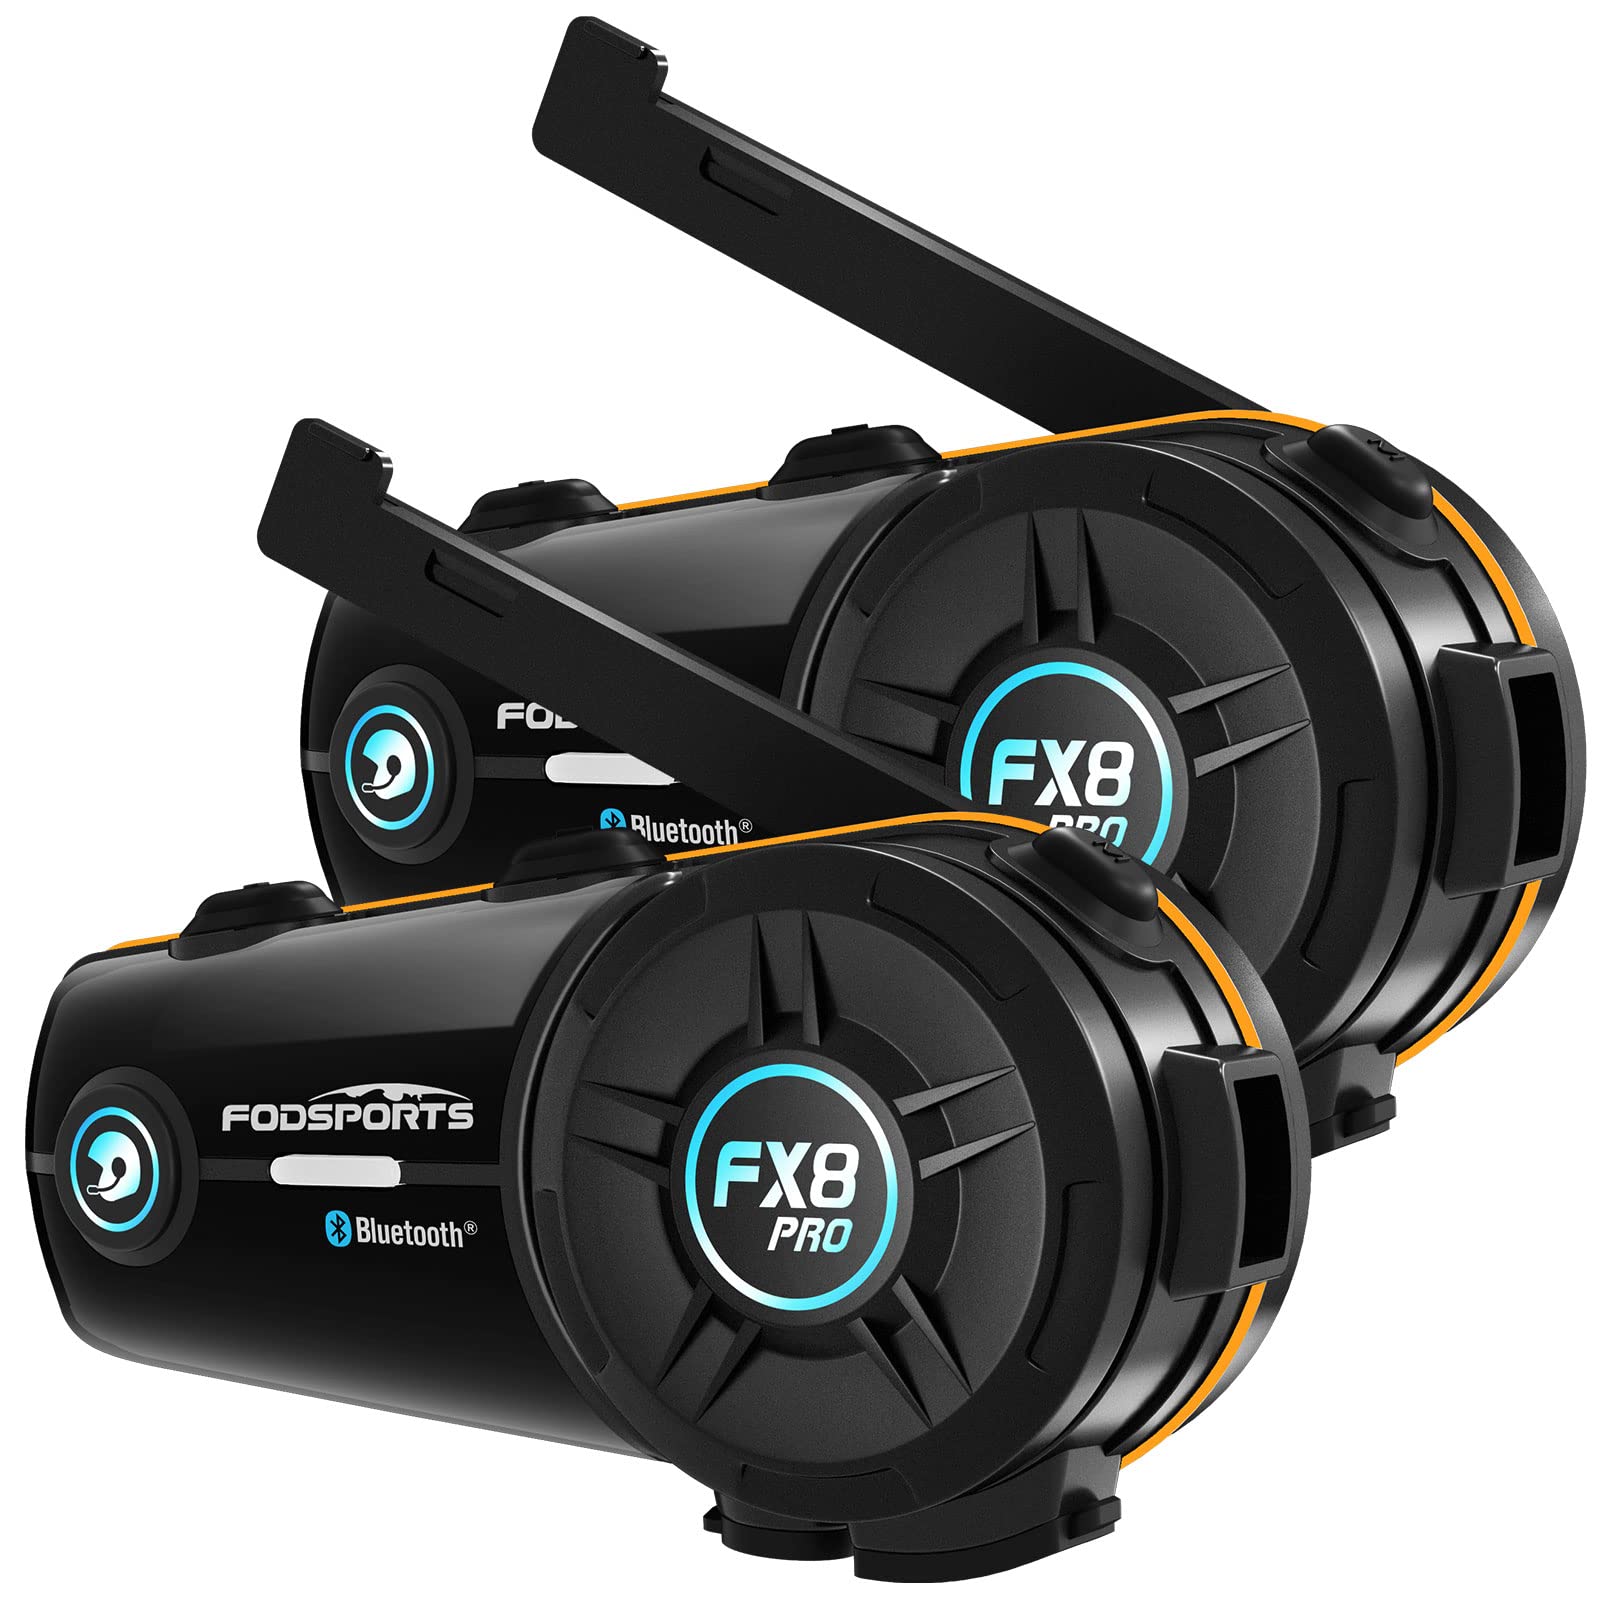 FODSPORTS FX8 Pro Motorrad-Kommunikationssysteme mit Dual-Chip-Schnellkopplung, Musikfreigabe, Audio-Mixing, 3 Soundeffekte, FM 8 Riders Group Intercom, 2 Stück